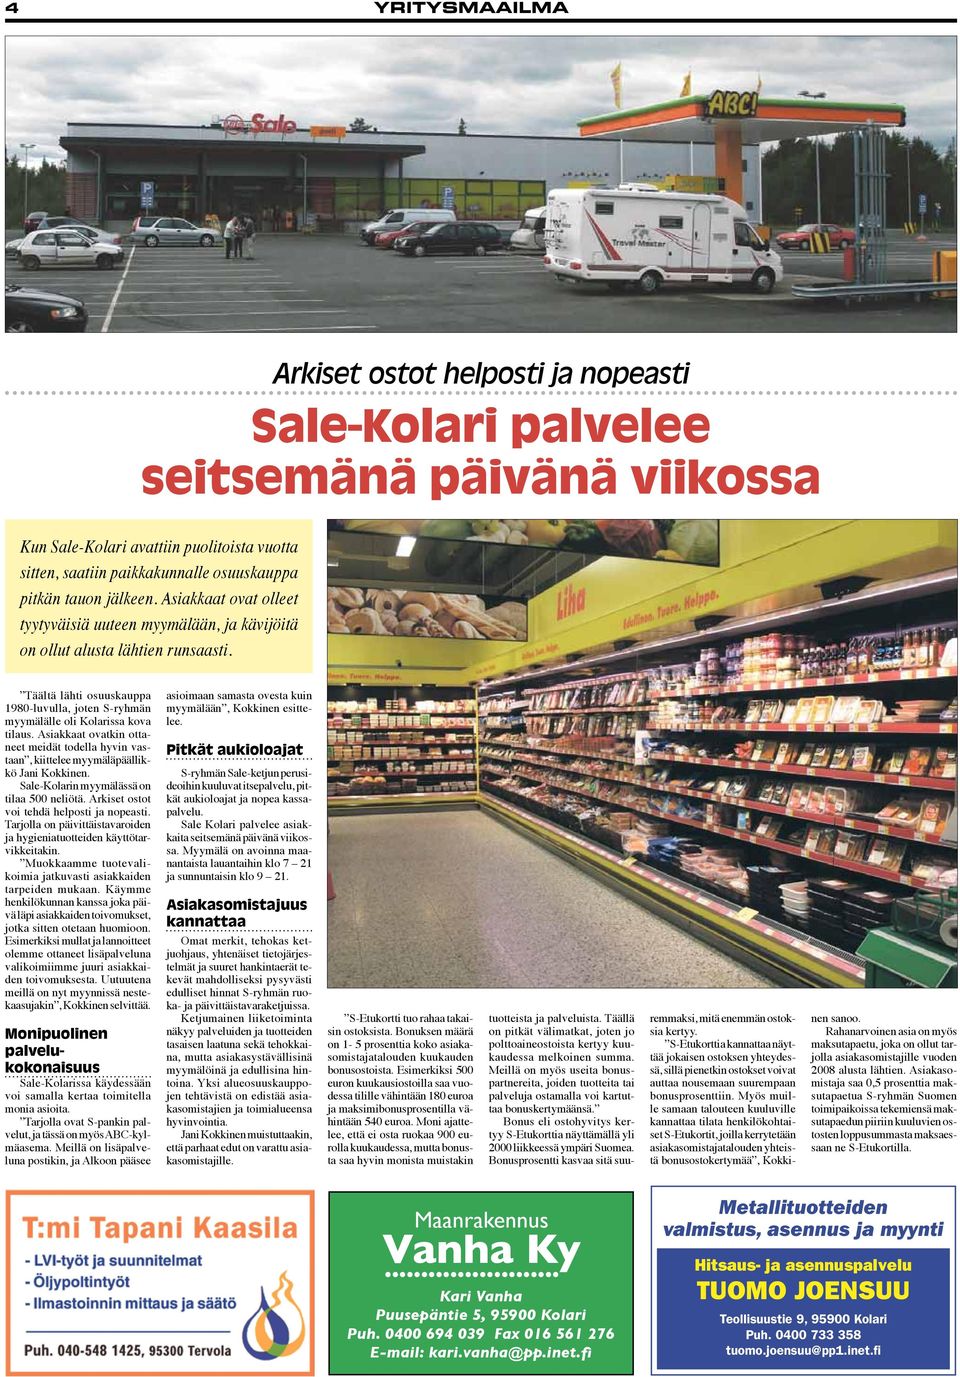 Asiakkaat ovatkin ottaneet meidät todella hyvin vastaan, kiittelee myymäläpäällikkö Jani Kokkinen. Sale-Kolarin myymälässä on tilaa 500 neliötä. Arkiset ostot voi tehdä helposti ja nopeasti.